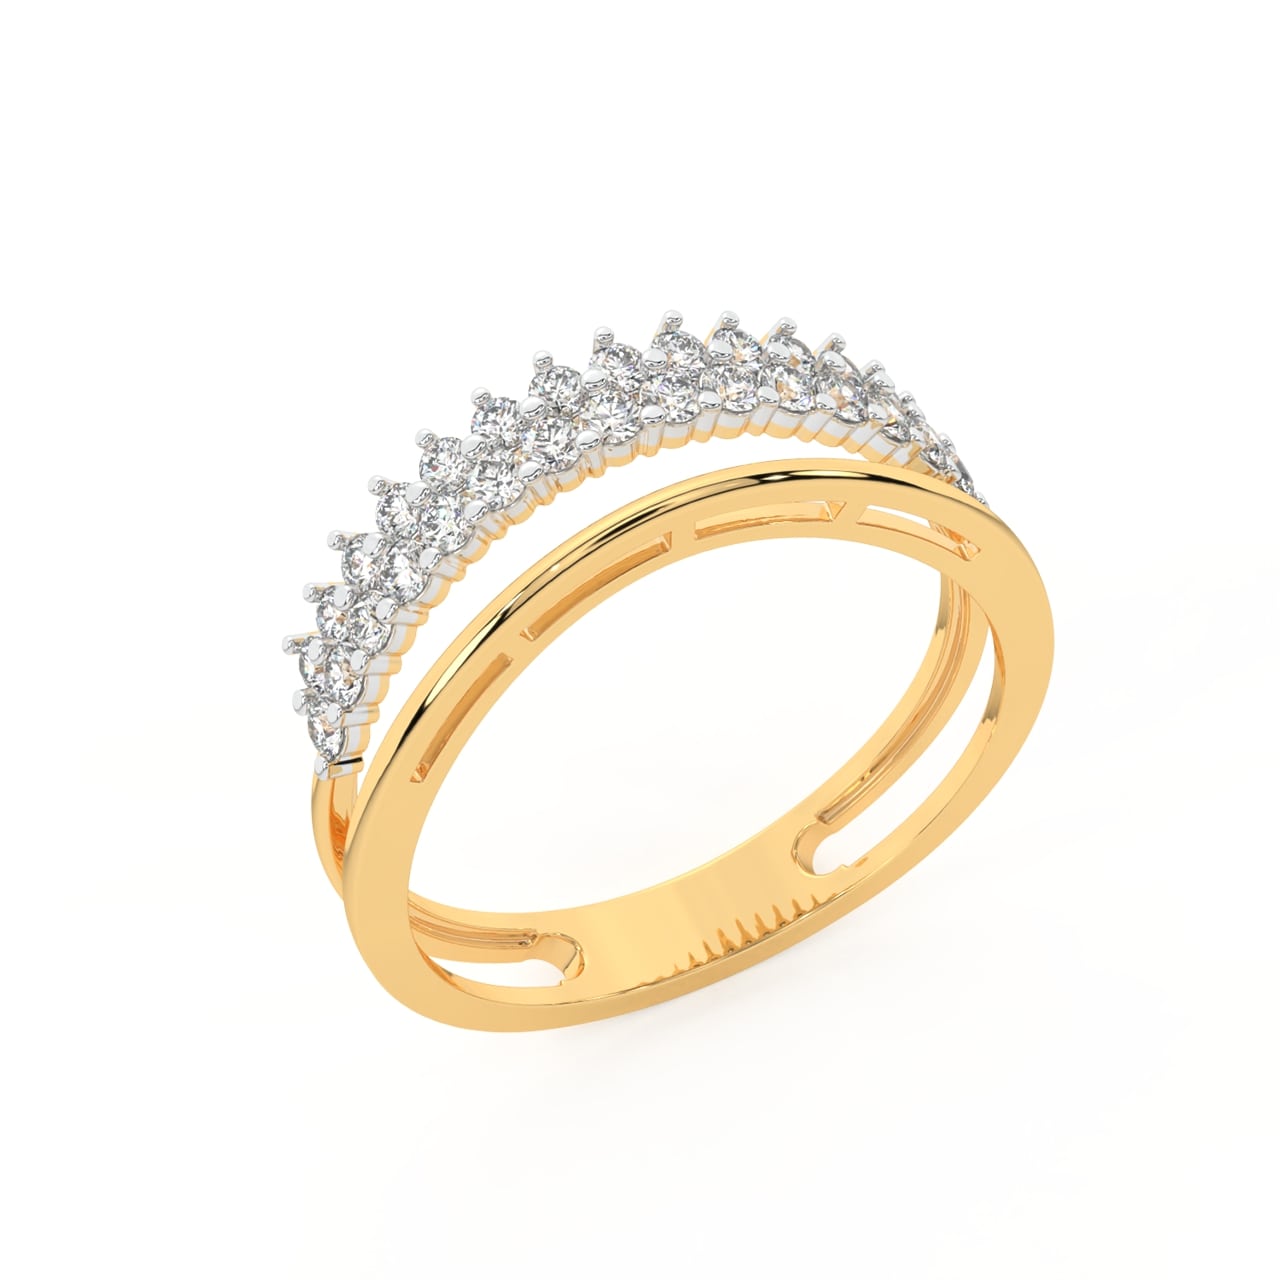 Sarahi Round Diamond Engagement Ring